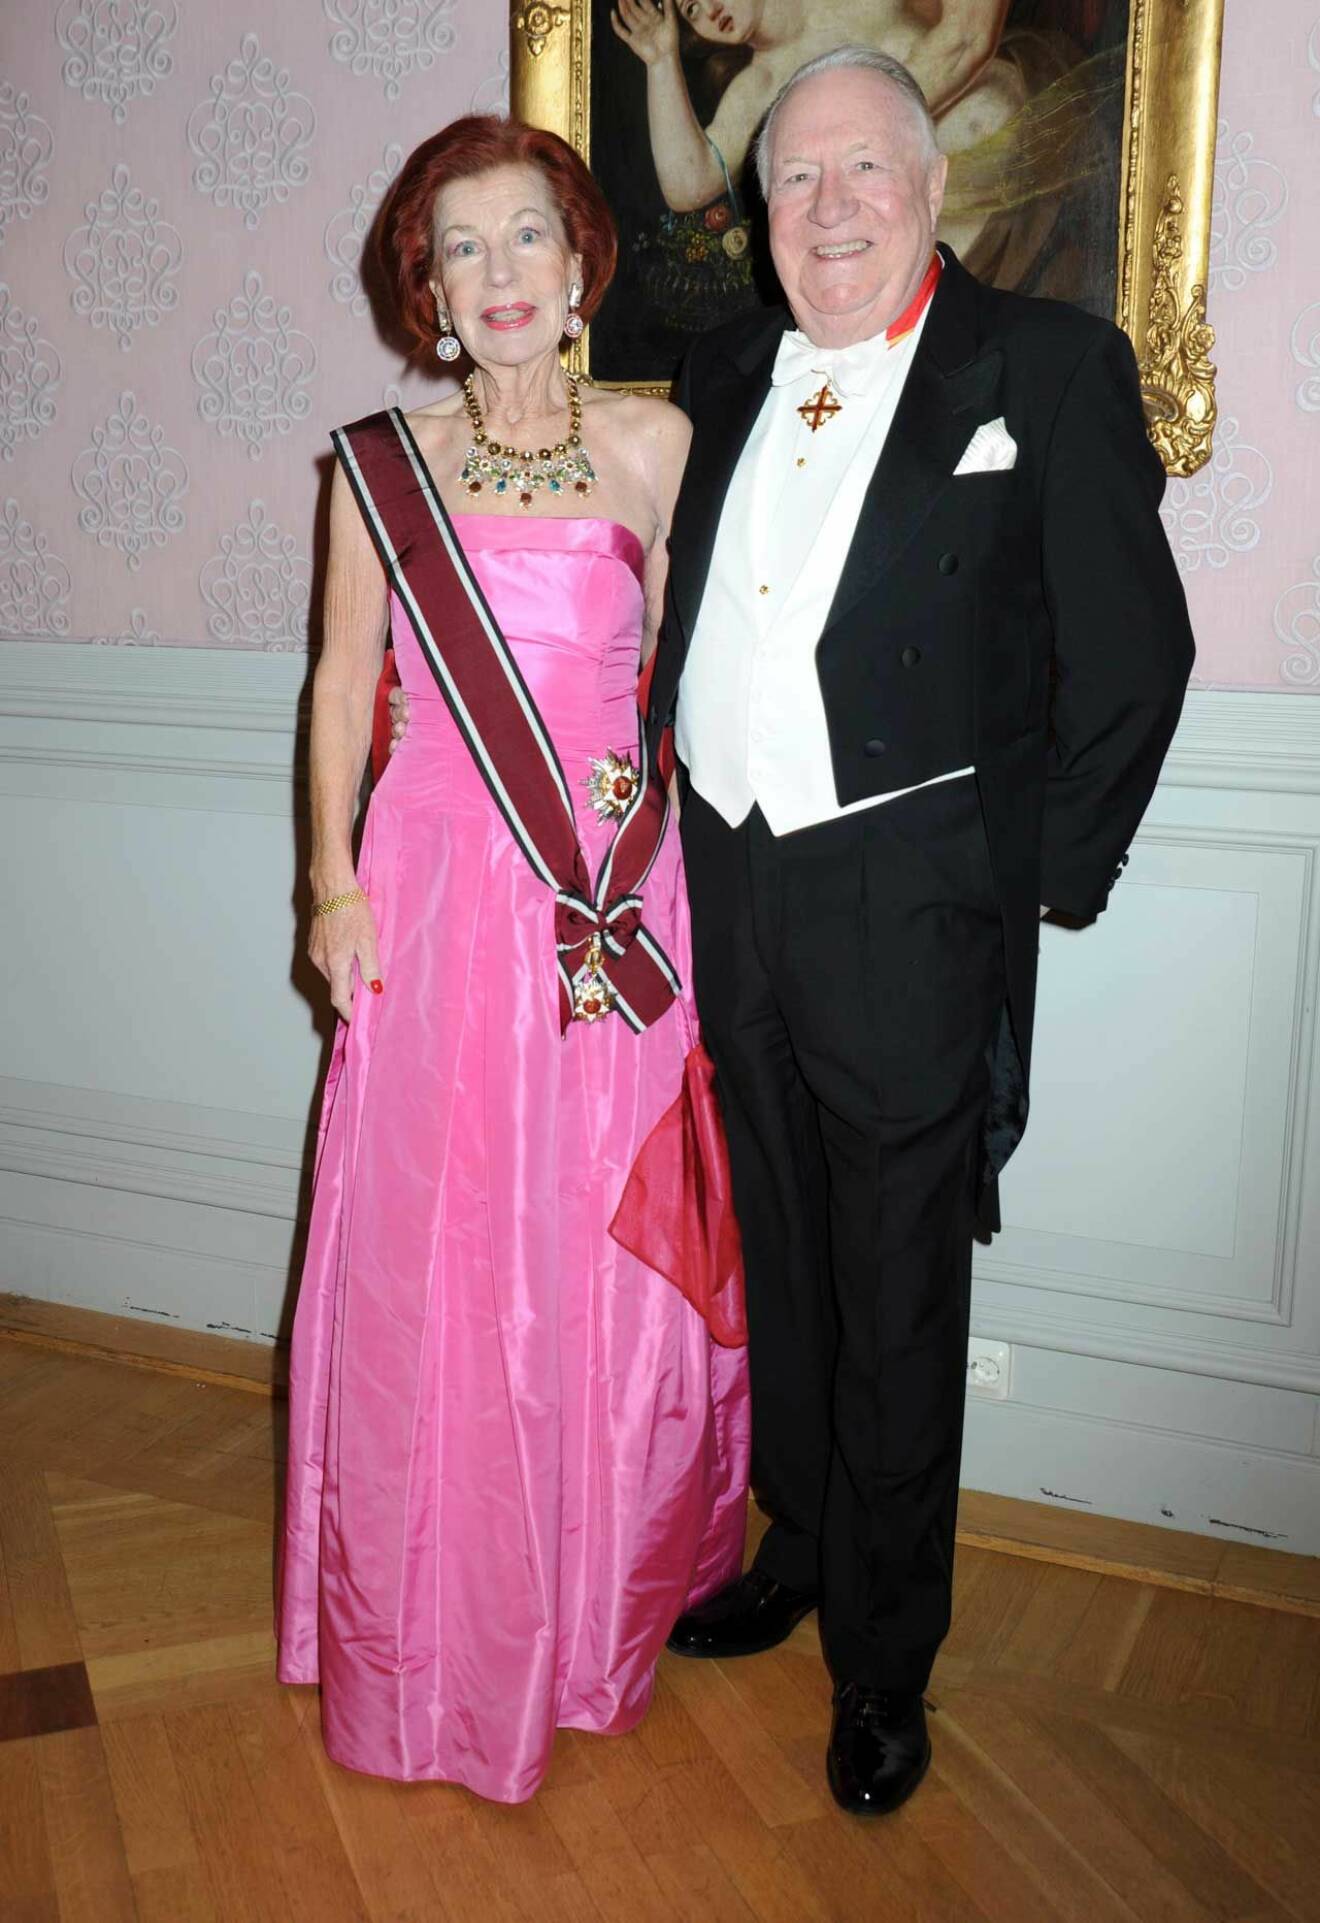 I vacker rosa klänning kom ambassadör Karin Ehnbom Palmqvist med make Lars.